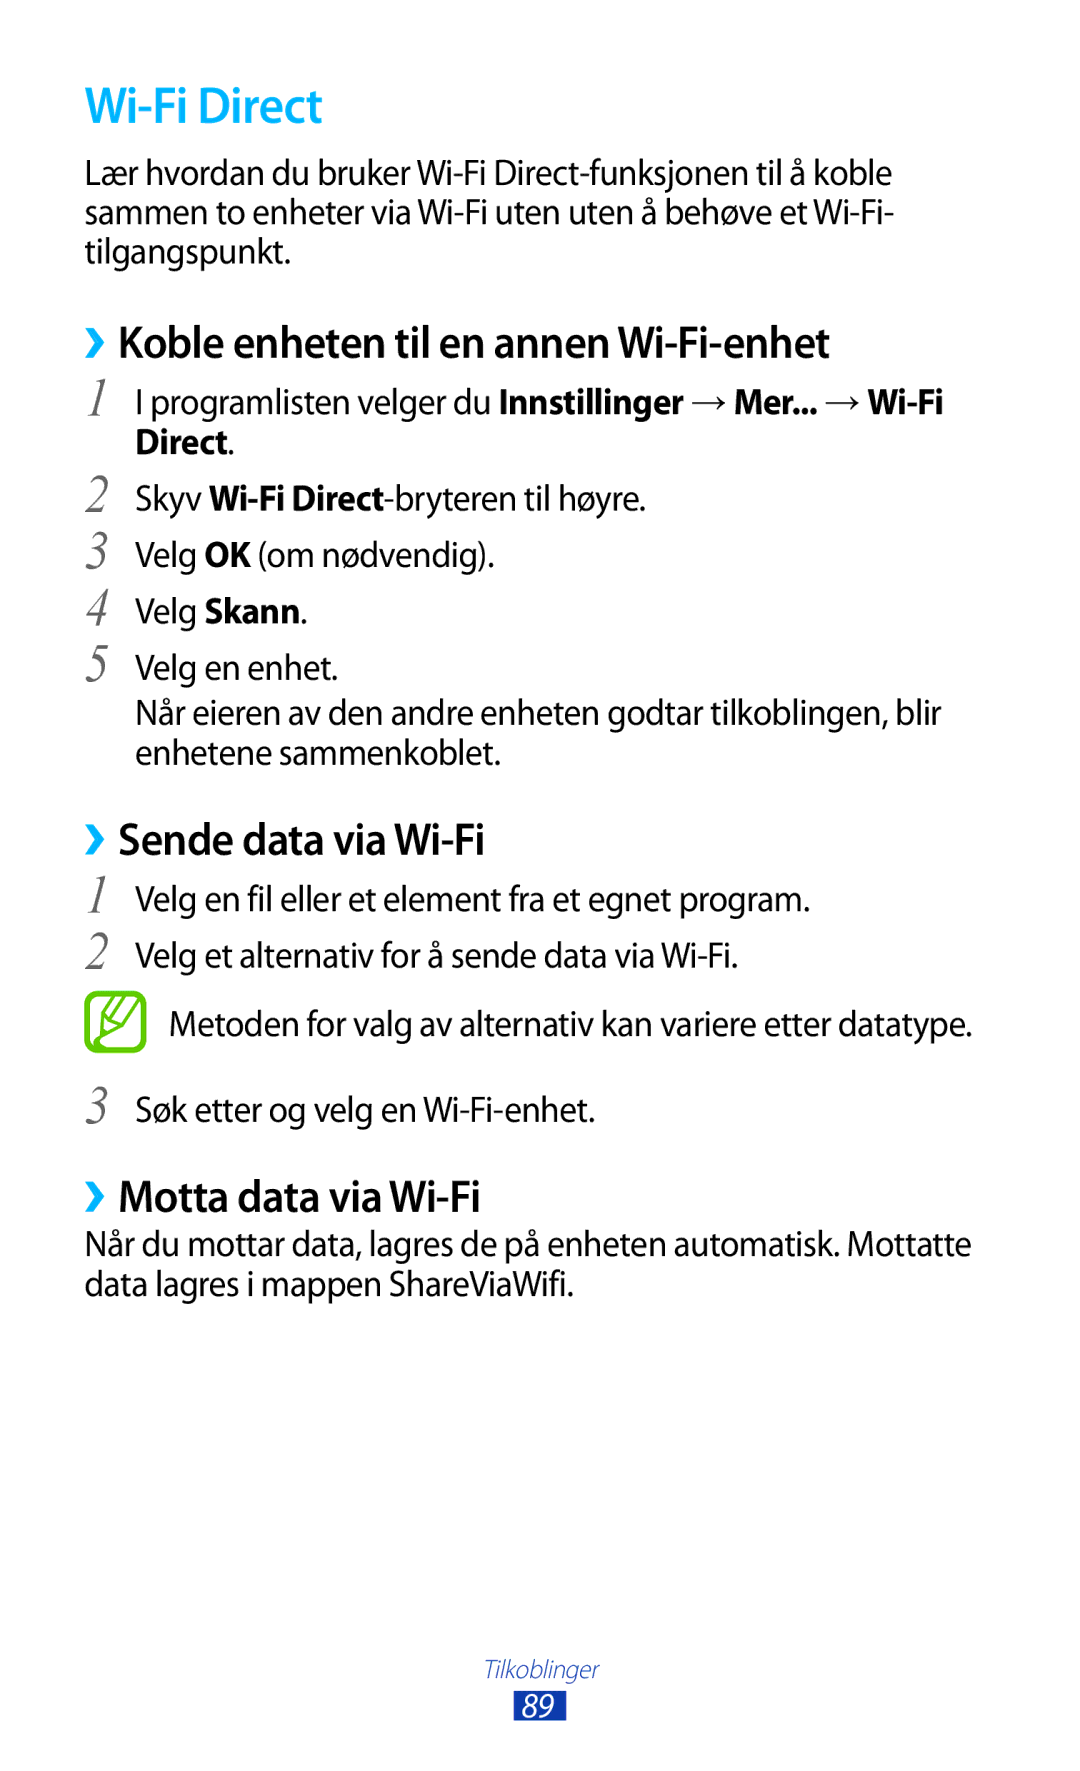 Samsung GT-P7500UWENEE, GT-P7500FKENEE manual Wi-Fi Direct, ››Koble enheten til en annen Wi-Fi-enhet, ››Sende data via Wi-Fi 